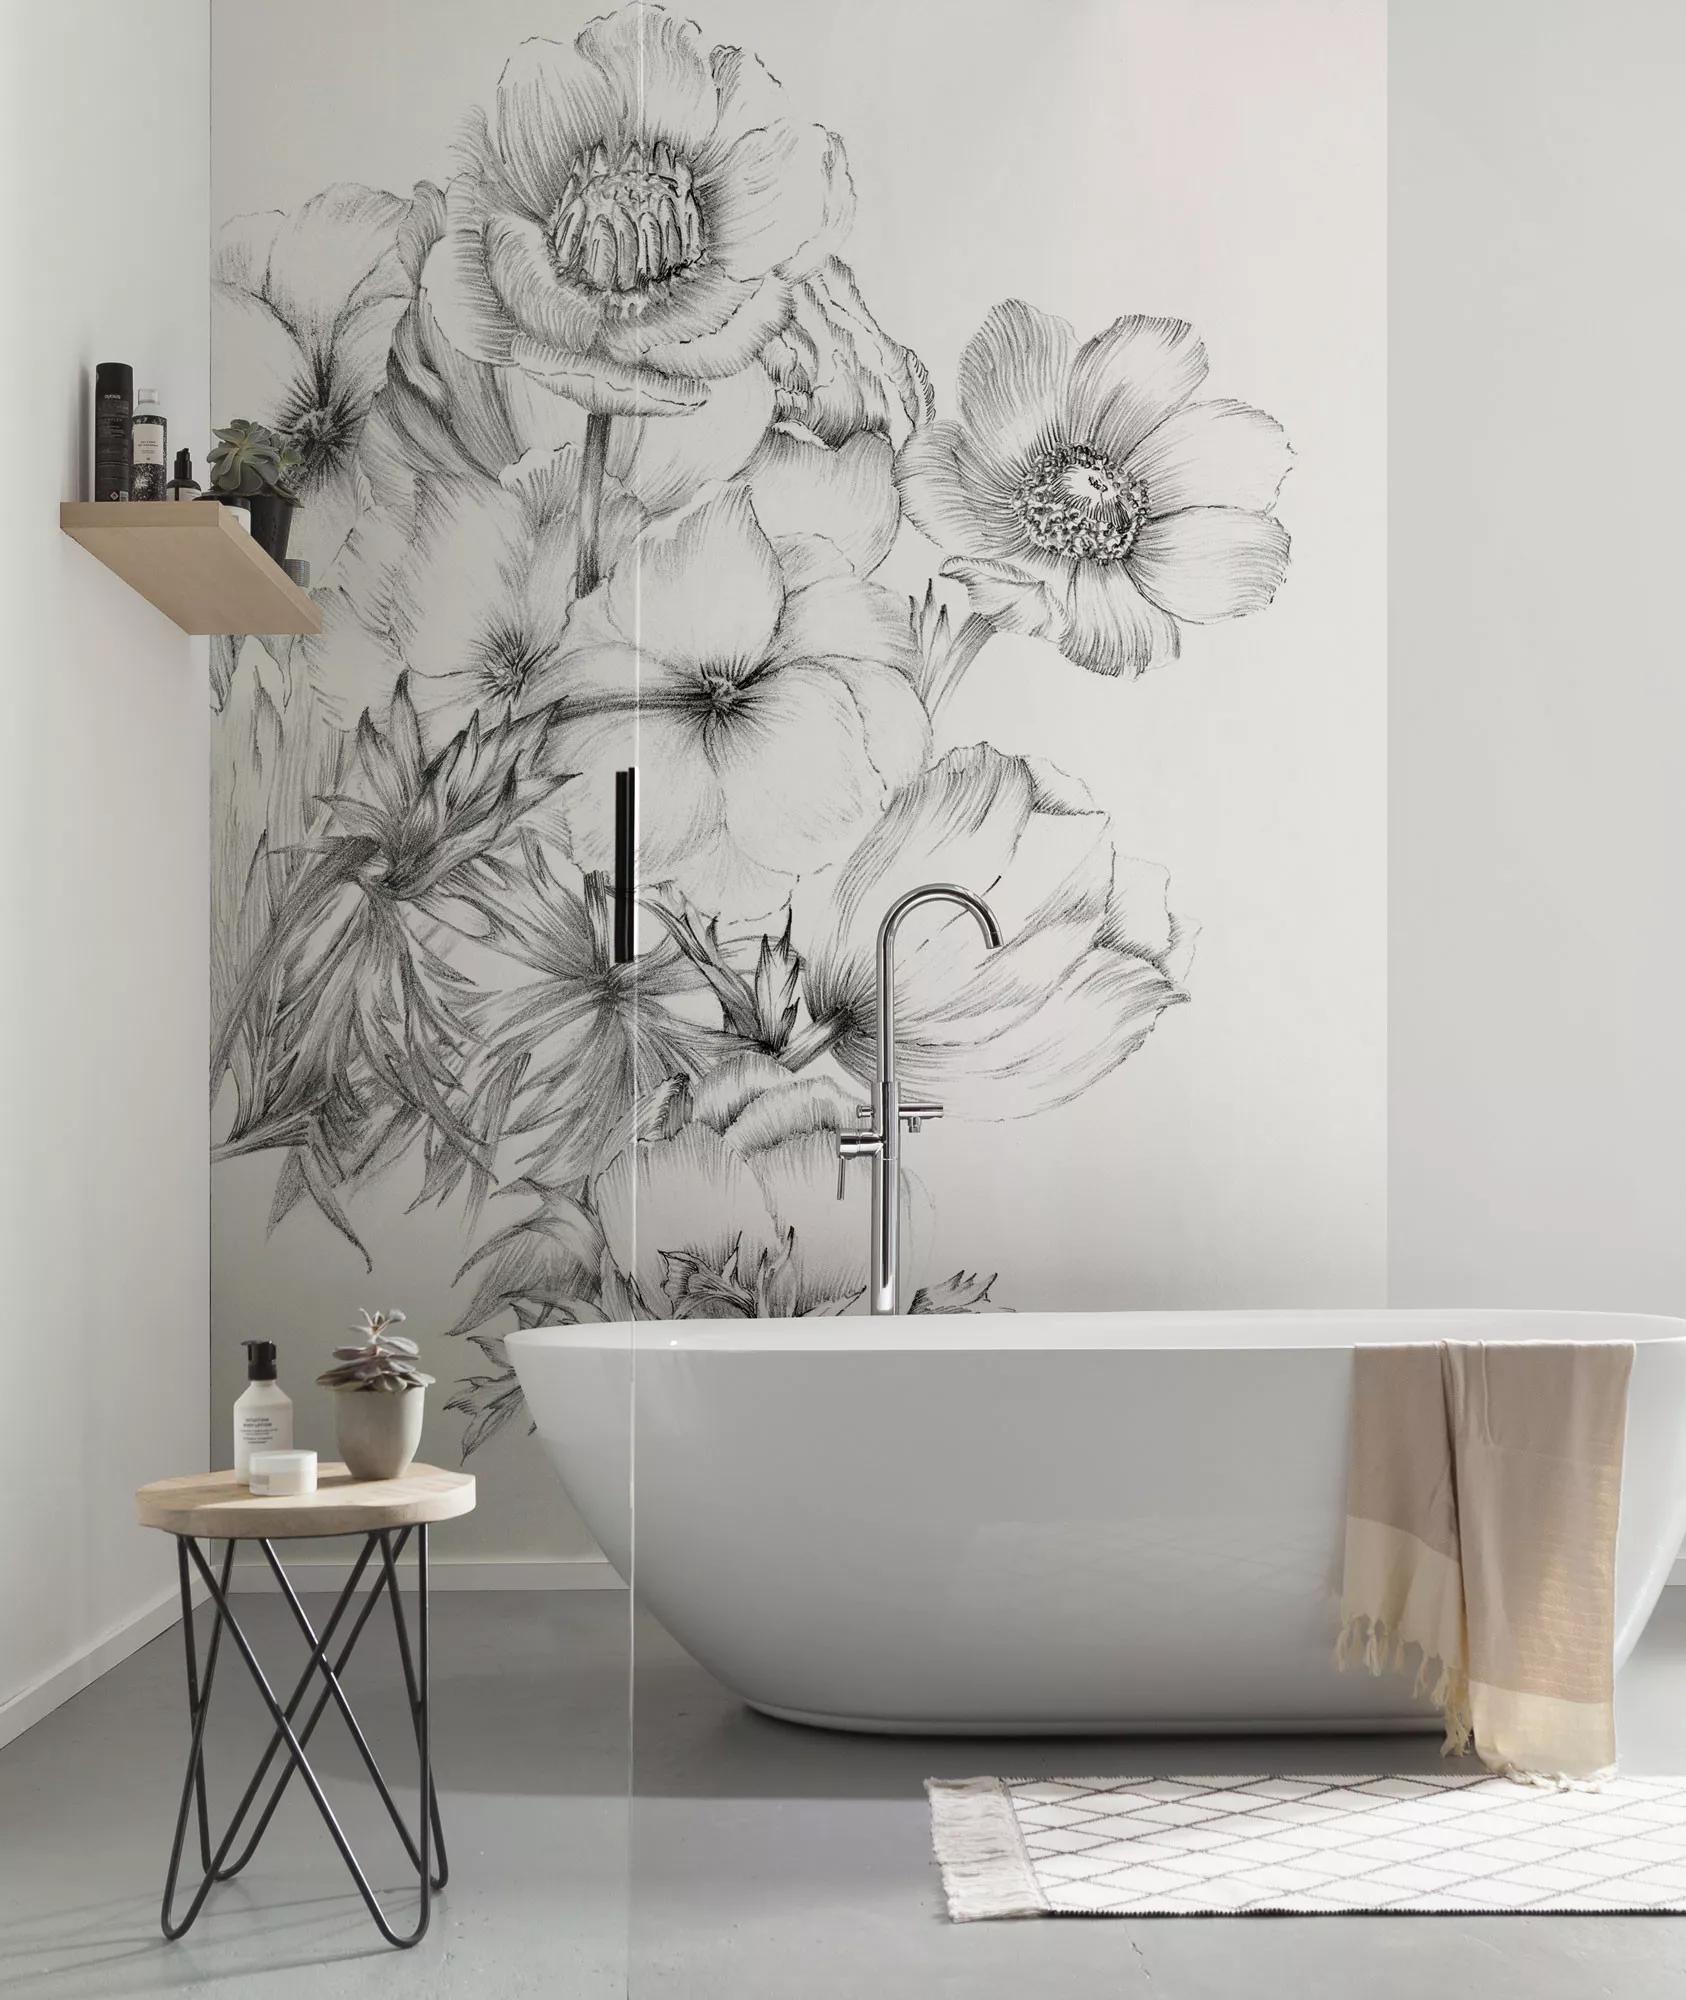 Minimalista fali poszter fekete fehér virág mintával rajzolt stílusban